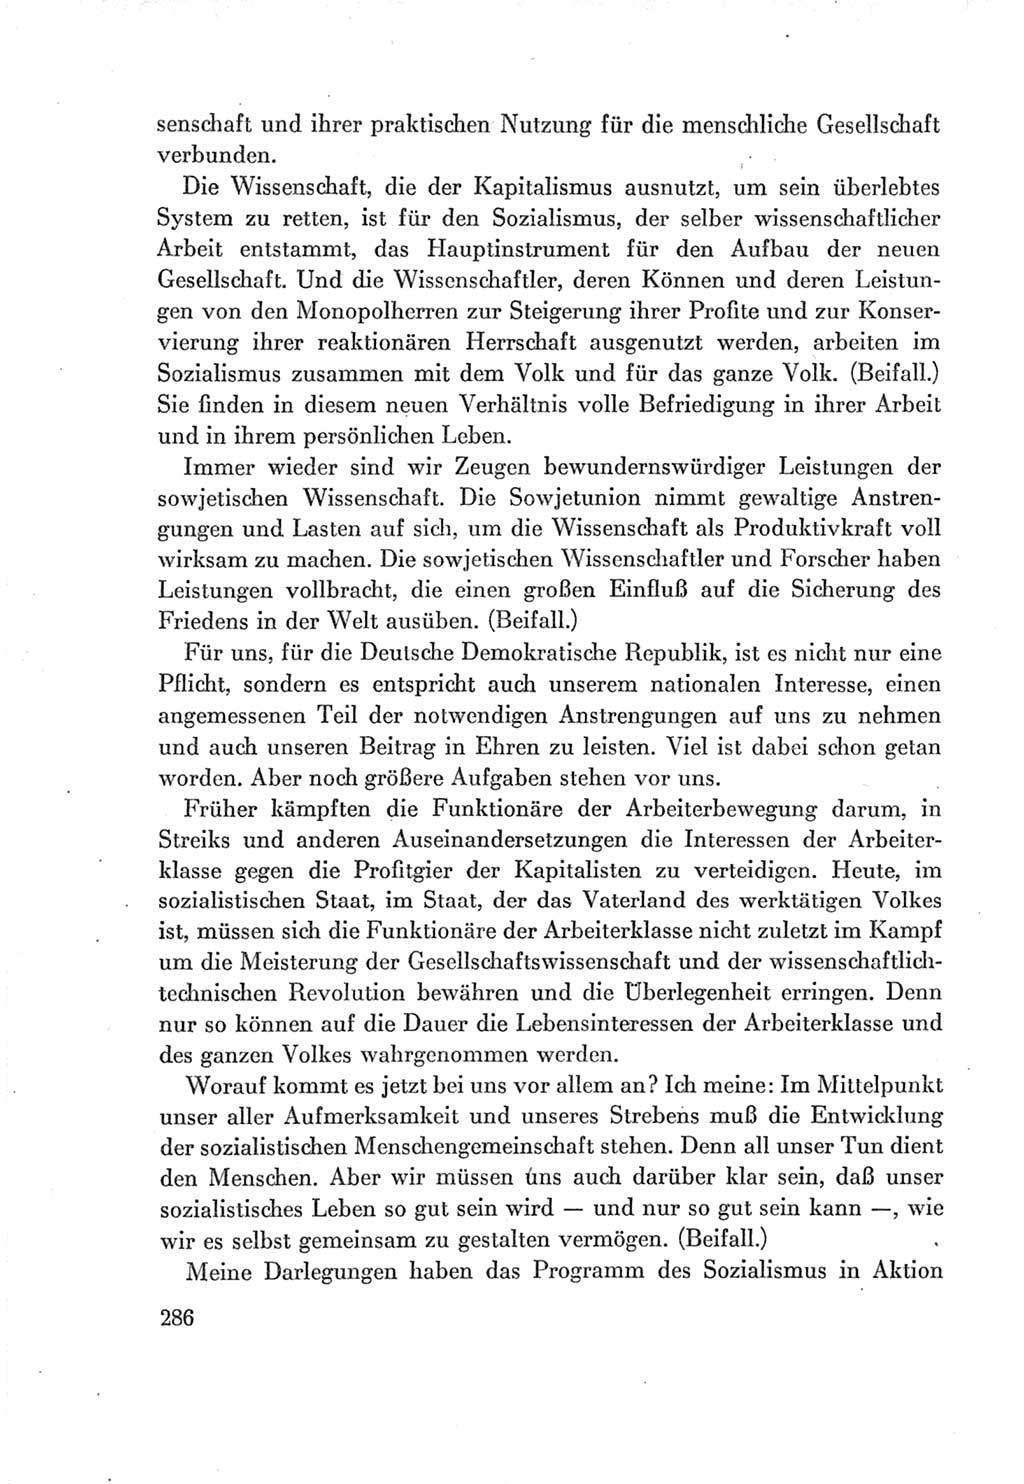 Protokoll der Verhandlungen des Ⅶ. Parteitages der Sozialistischen Einheitspartei Deutschlands (SED) [Deutsche Demokratische Republik (DDR)] 1967, Band Ⅰ, Seite 286 (Prot. Verh. Ⅶ. PT SED DDR 1967, Bd. Ⅰ, S. 286)